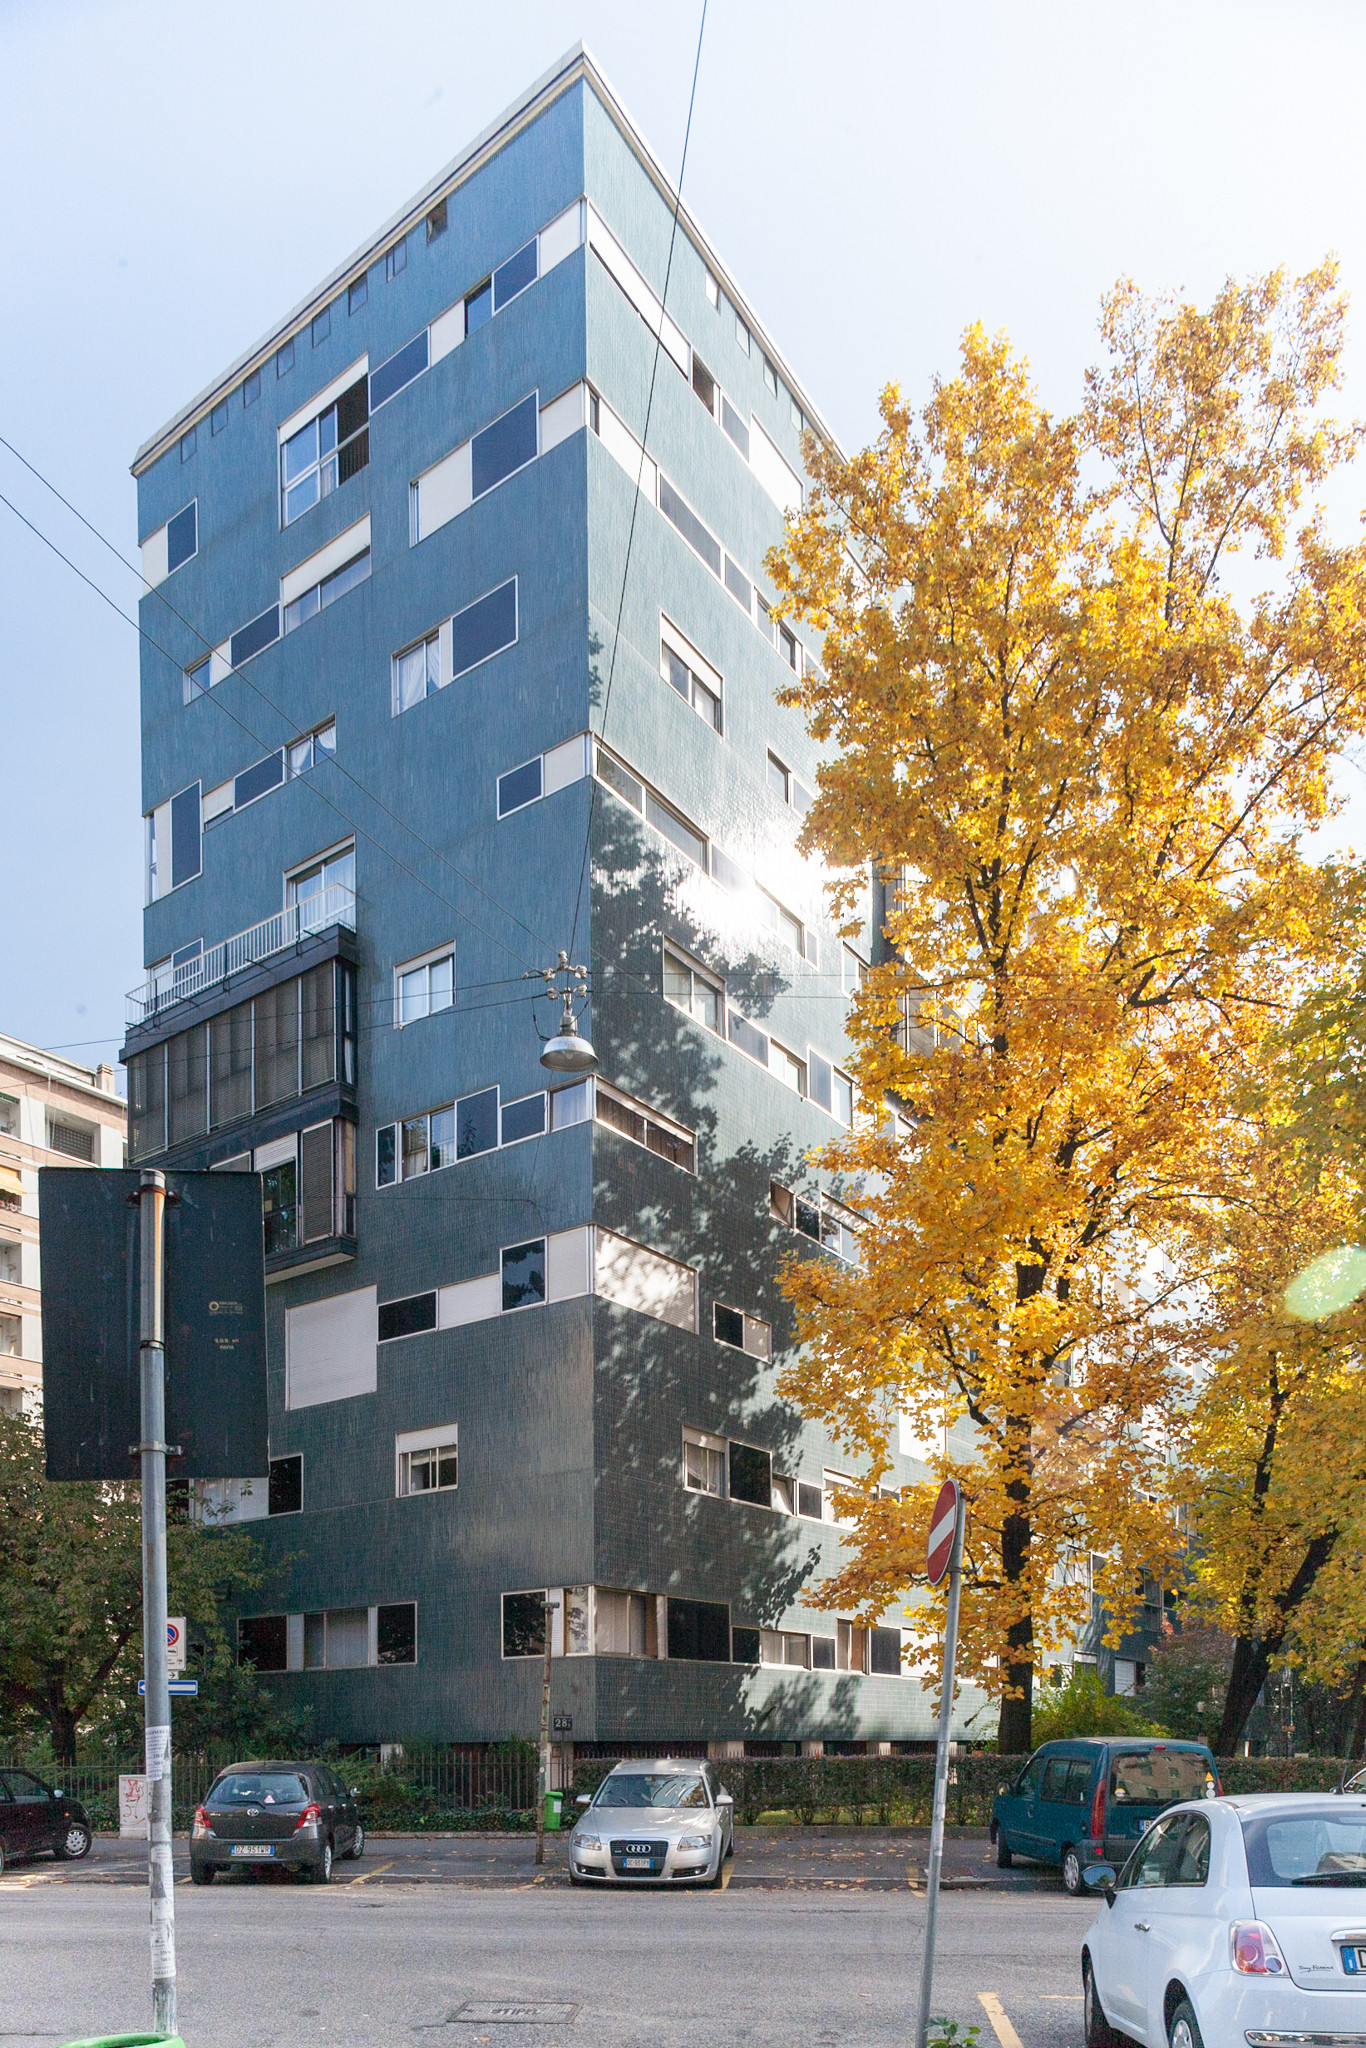 Edificio per abitazioni, via Nievo 28/1, Milano, 1955‑1957